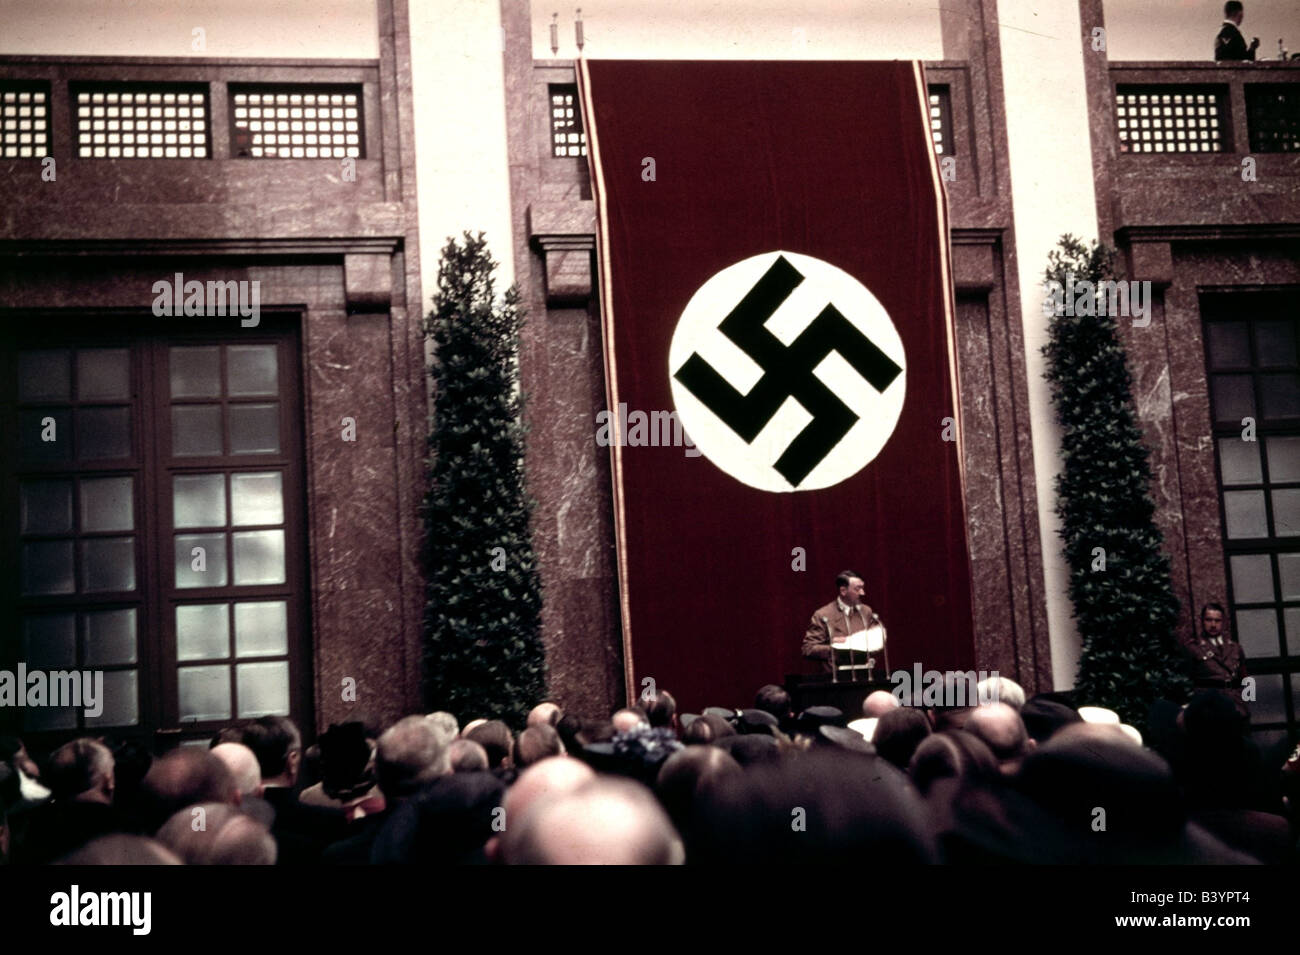 Hitler, Adolf, 20.4.1889 - 30.4.1945, politicien allemand (NSDAP), chancelier 30.1.1933 - 30.4.1945, discours lors de l'ouverture de Haus der Kunst, Munich 16.10.1938, drapeau, swastika, Allemagne nazie, troisième Reich, socialisme national, nazi, XXe siècle, Banque D'Images